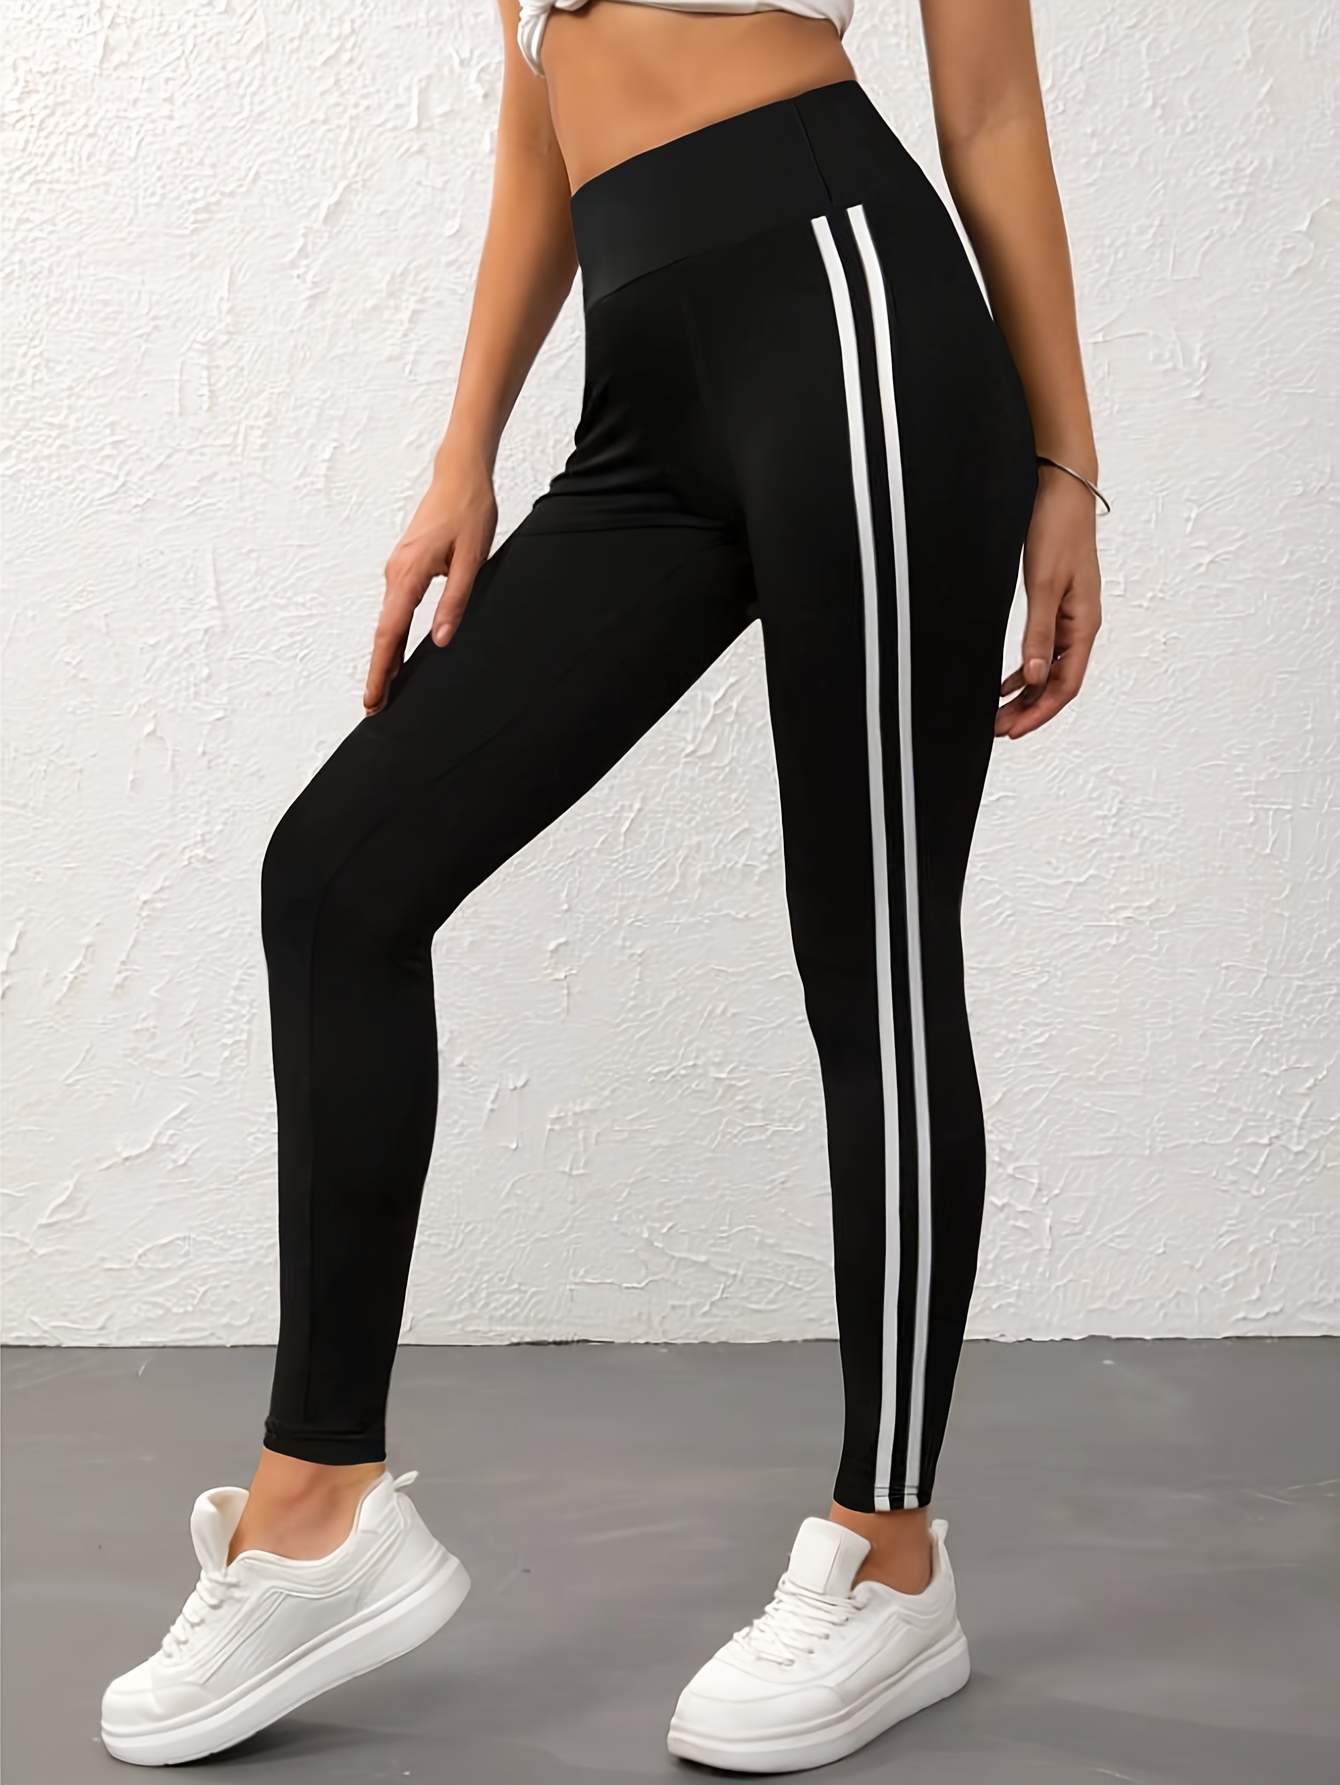 Black And White Slinky Stripe Legging